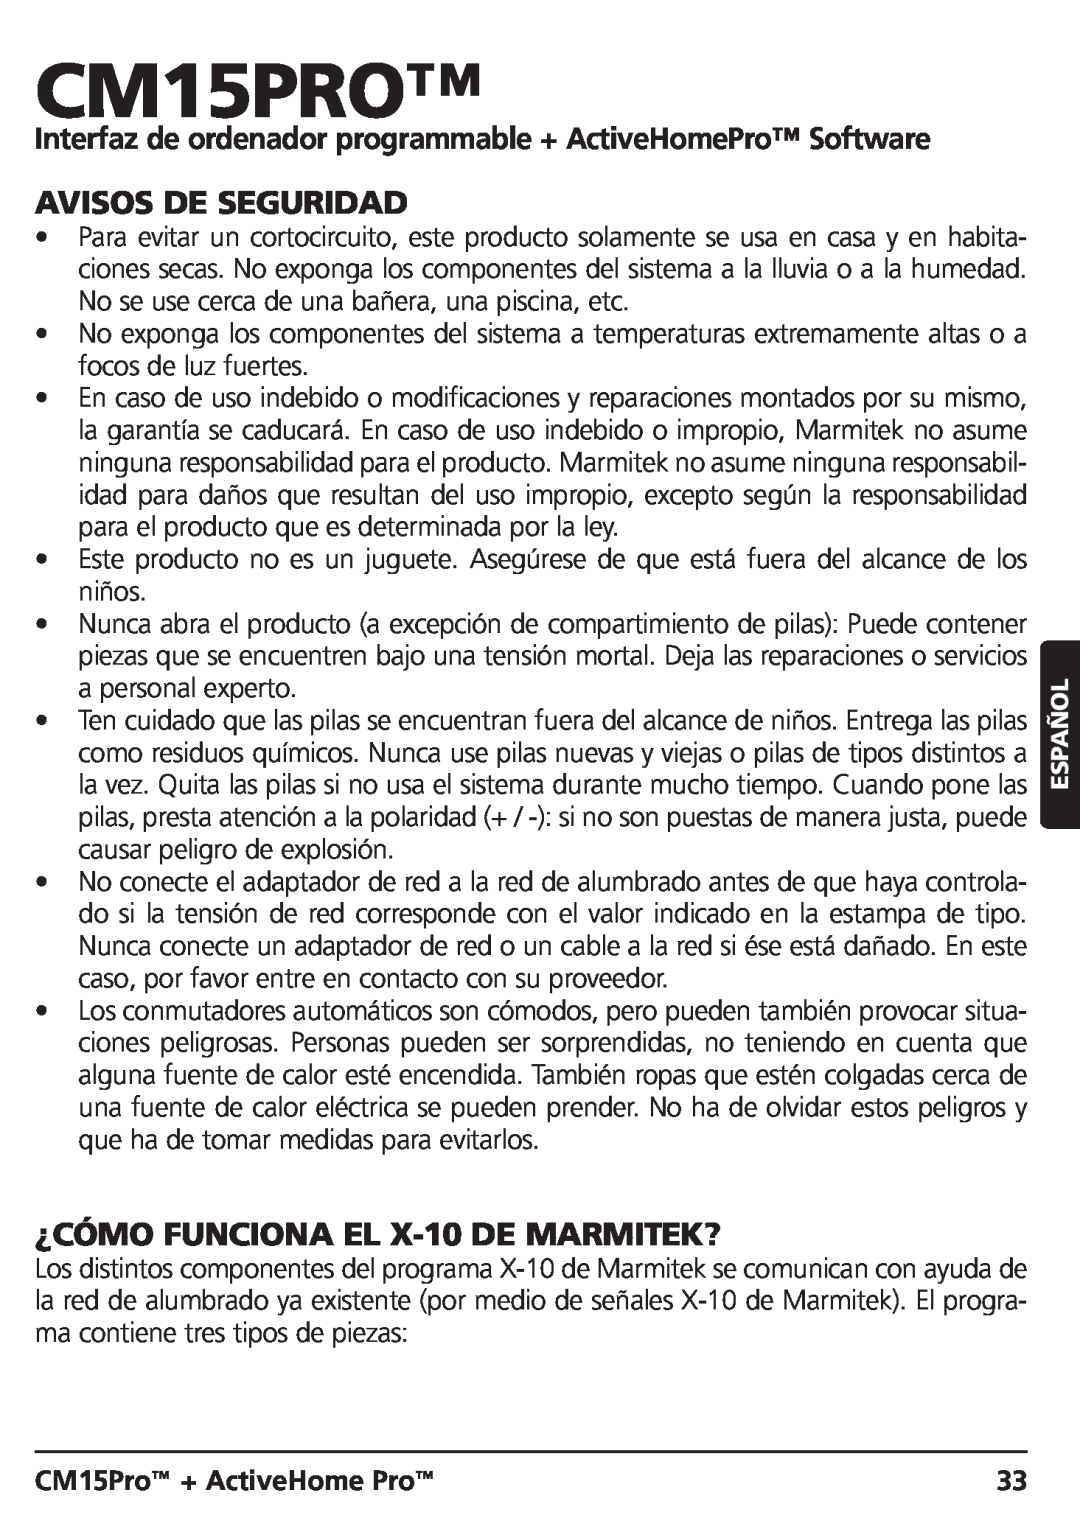 Marmitek CM15PRO manual Avisos De Seguridad, ¿CÓMO FUNCIONA EL X-10DE MARMITEK?, CM15Pro + ActiveHome Pro 